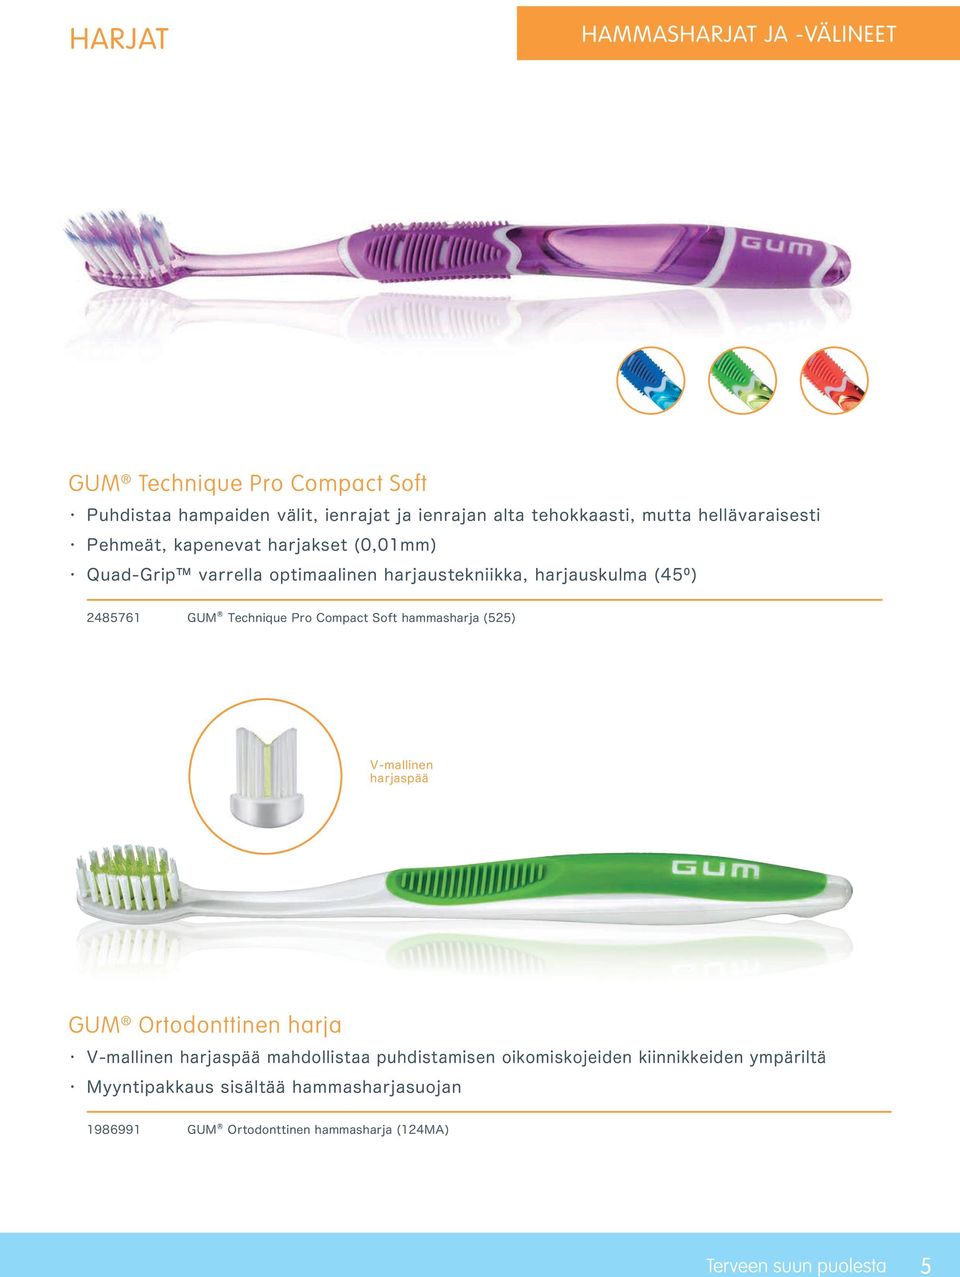 Technique Pro Compact Soft hammasharja (525) V-mallinen harjaspää GUM Ortodonttinen harja V-mallinen harjaspää mahdollistaa puhdistamisen